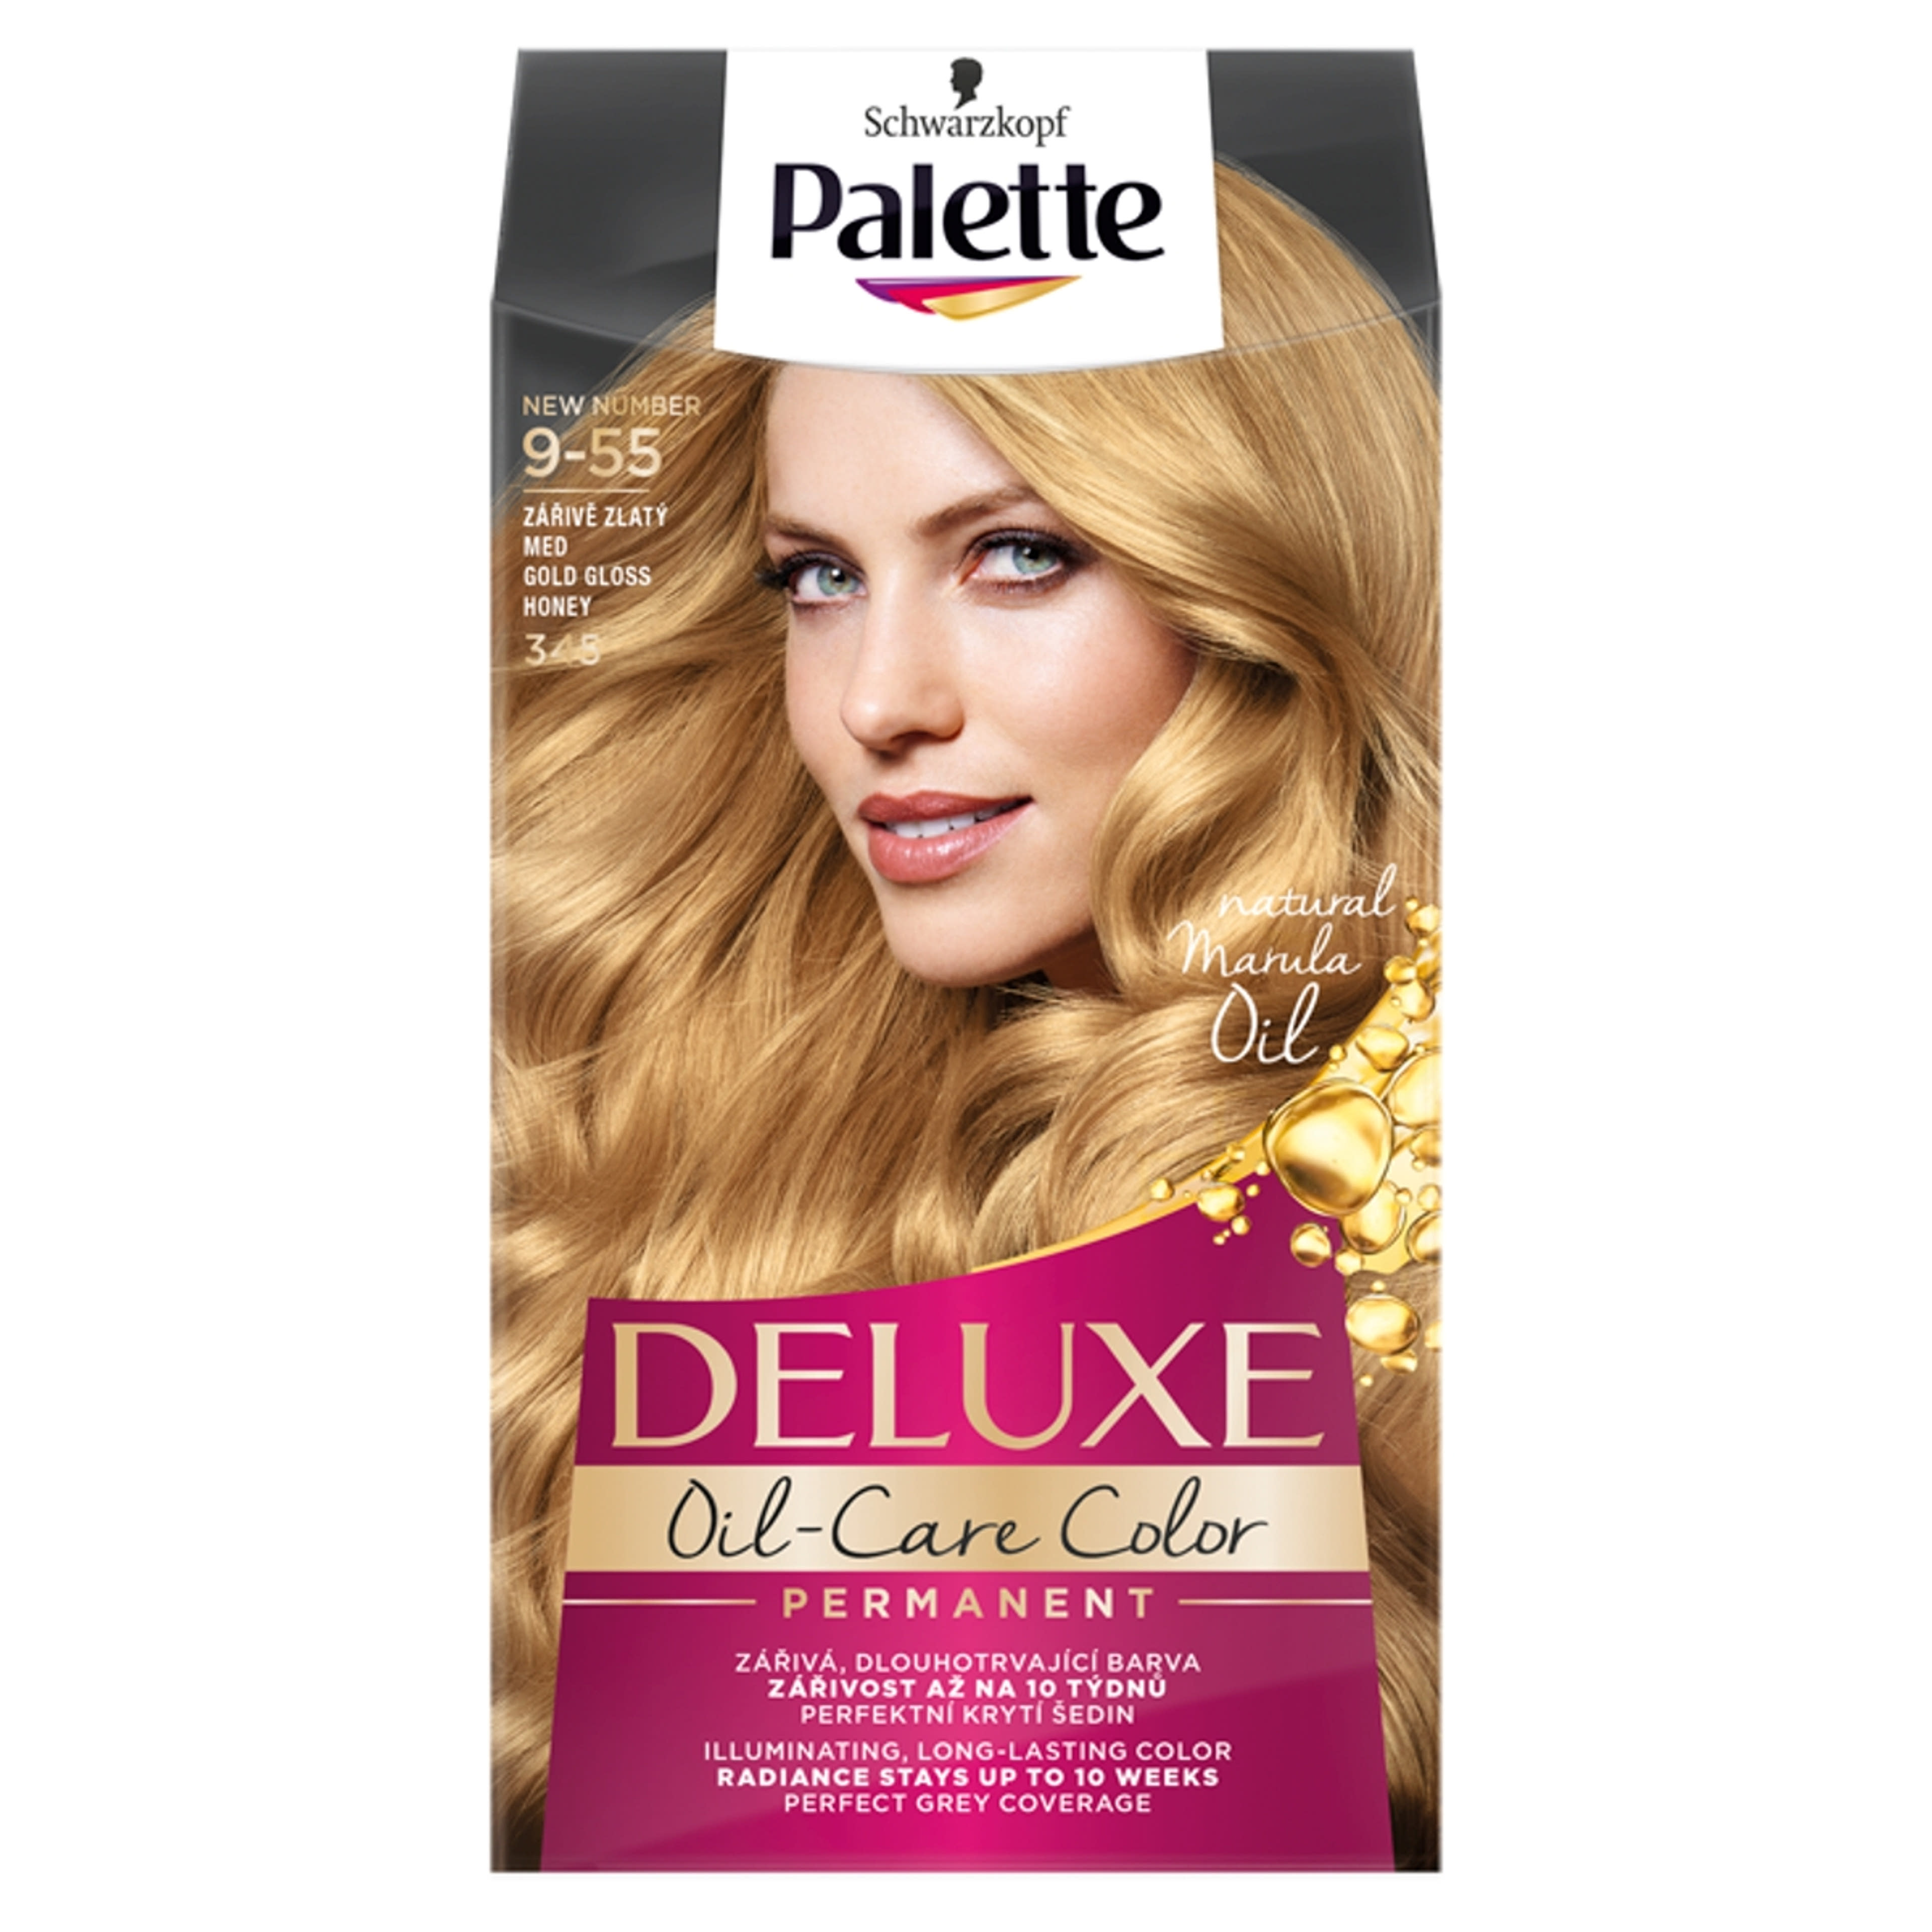 Palette Deluxe 9-55 aranyfényű szőke hajfesték (345) - 1 db